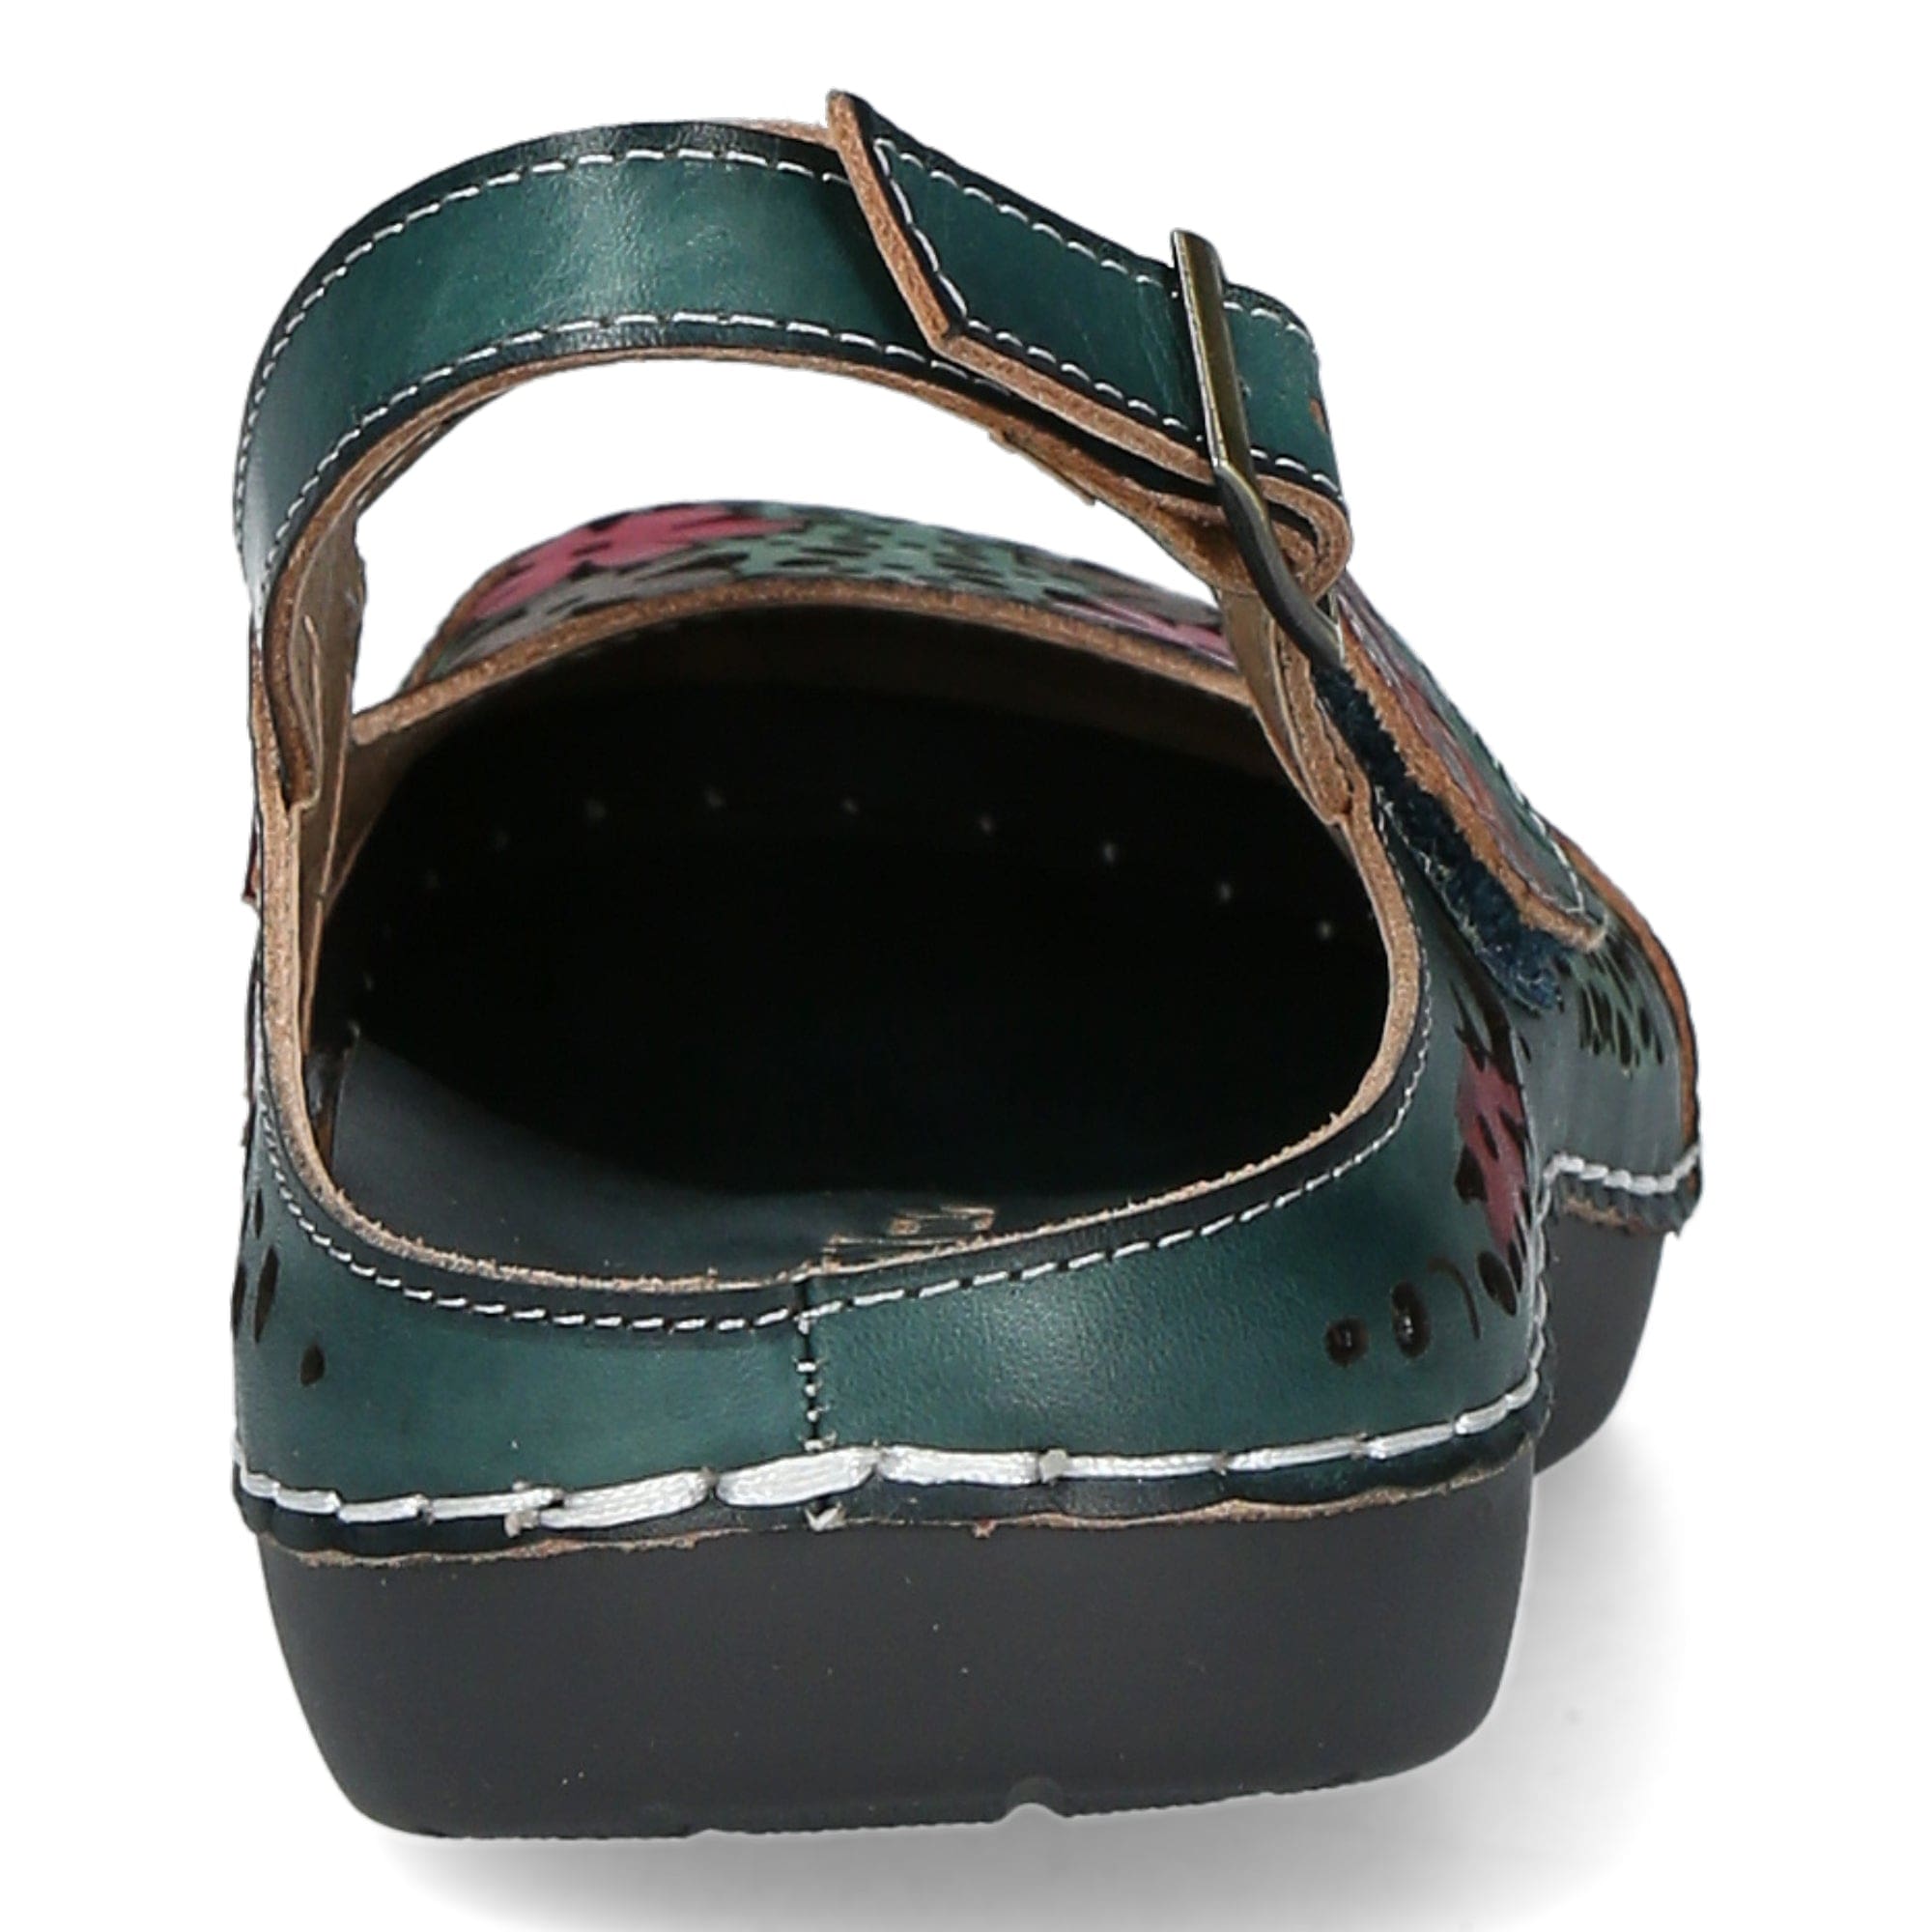 Zapato BICLLYO01 - Sandalia